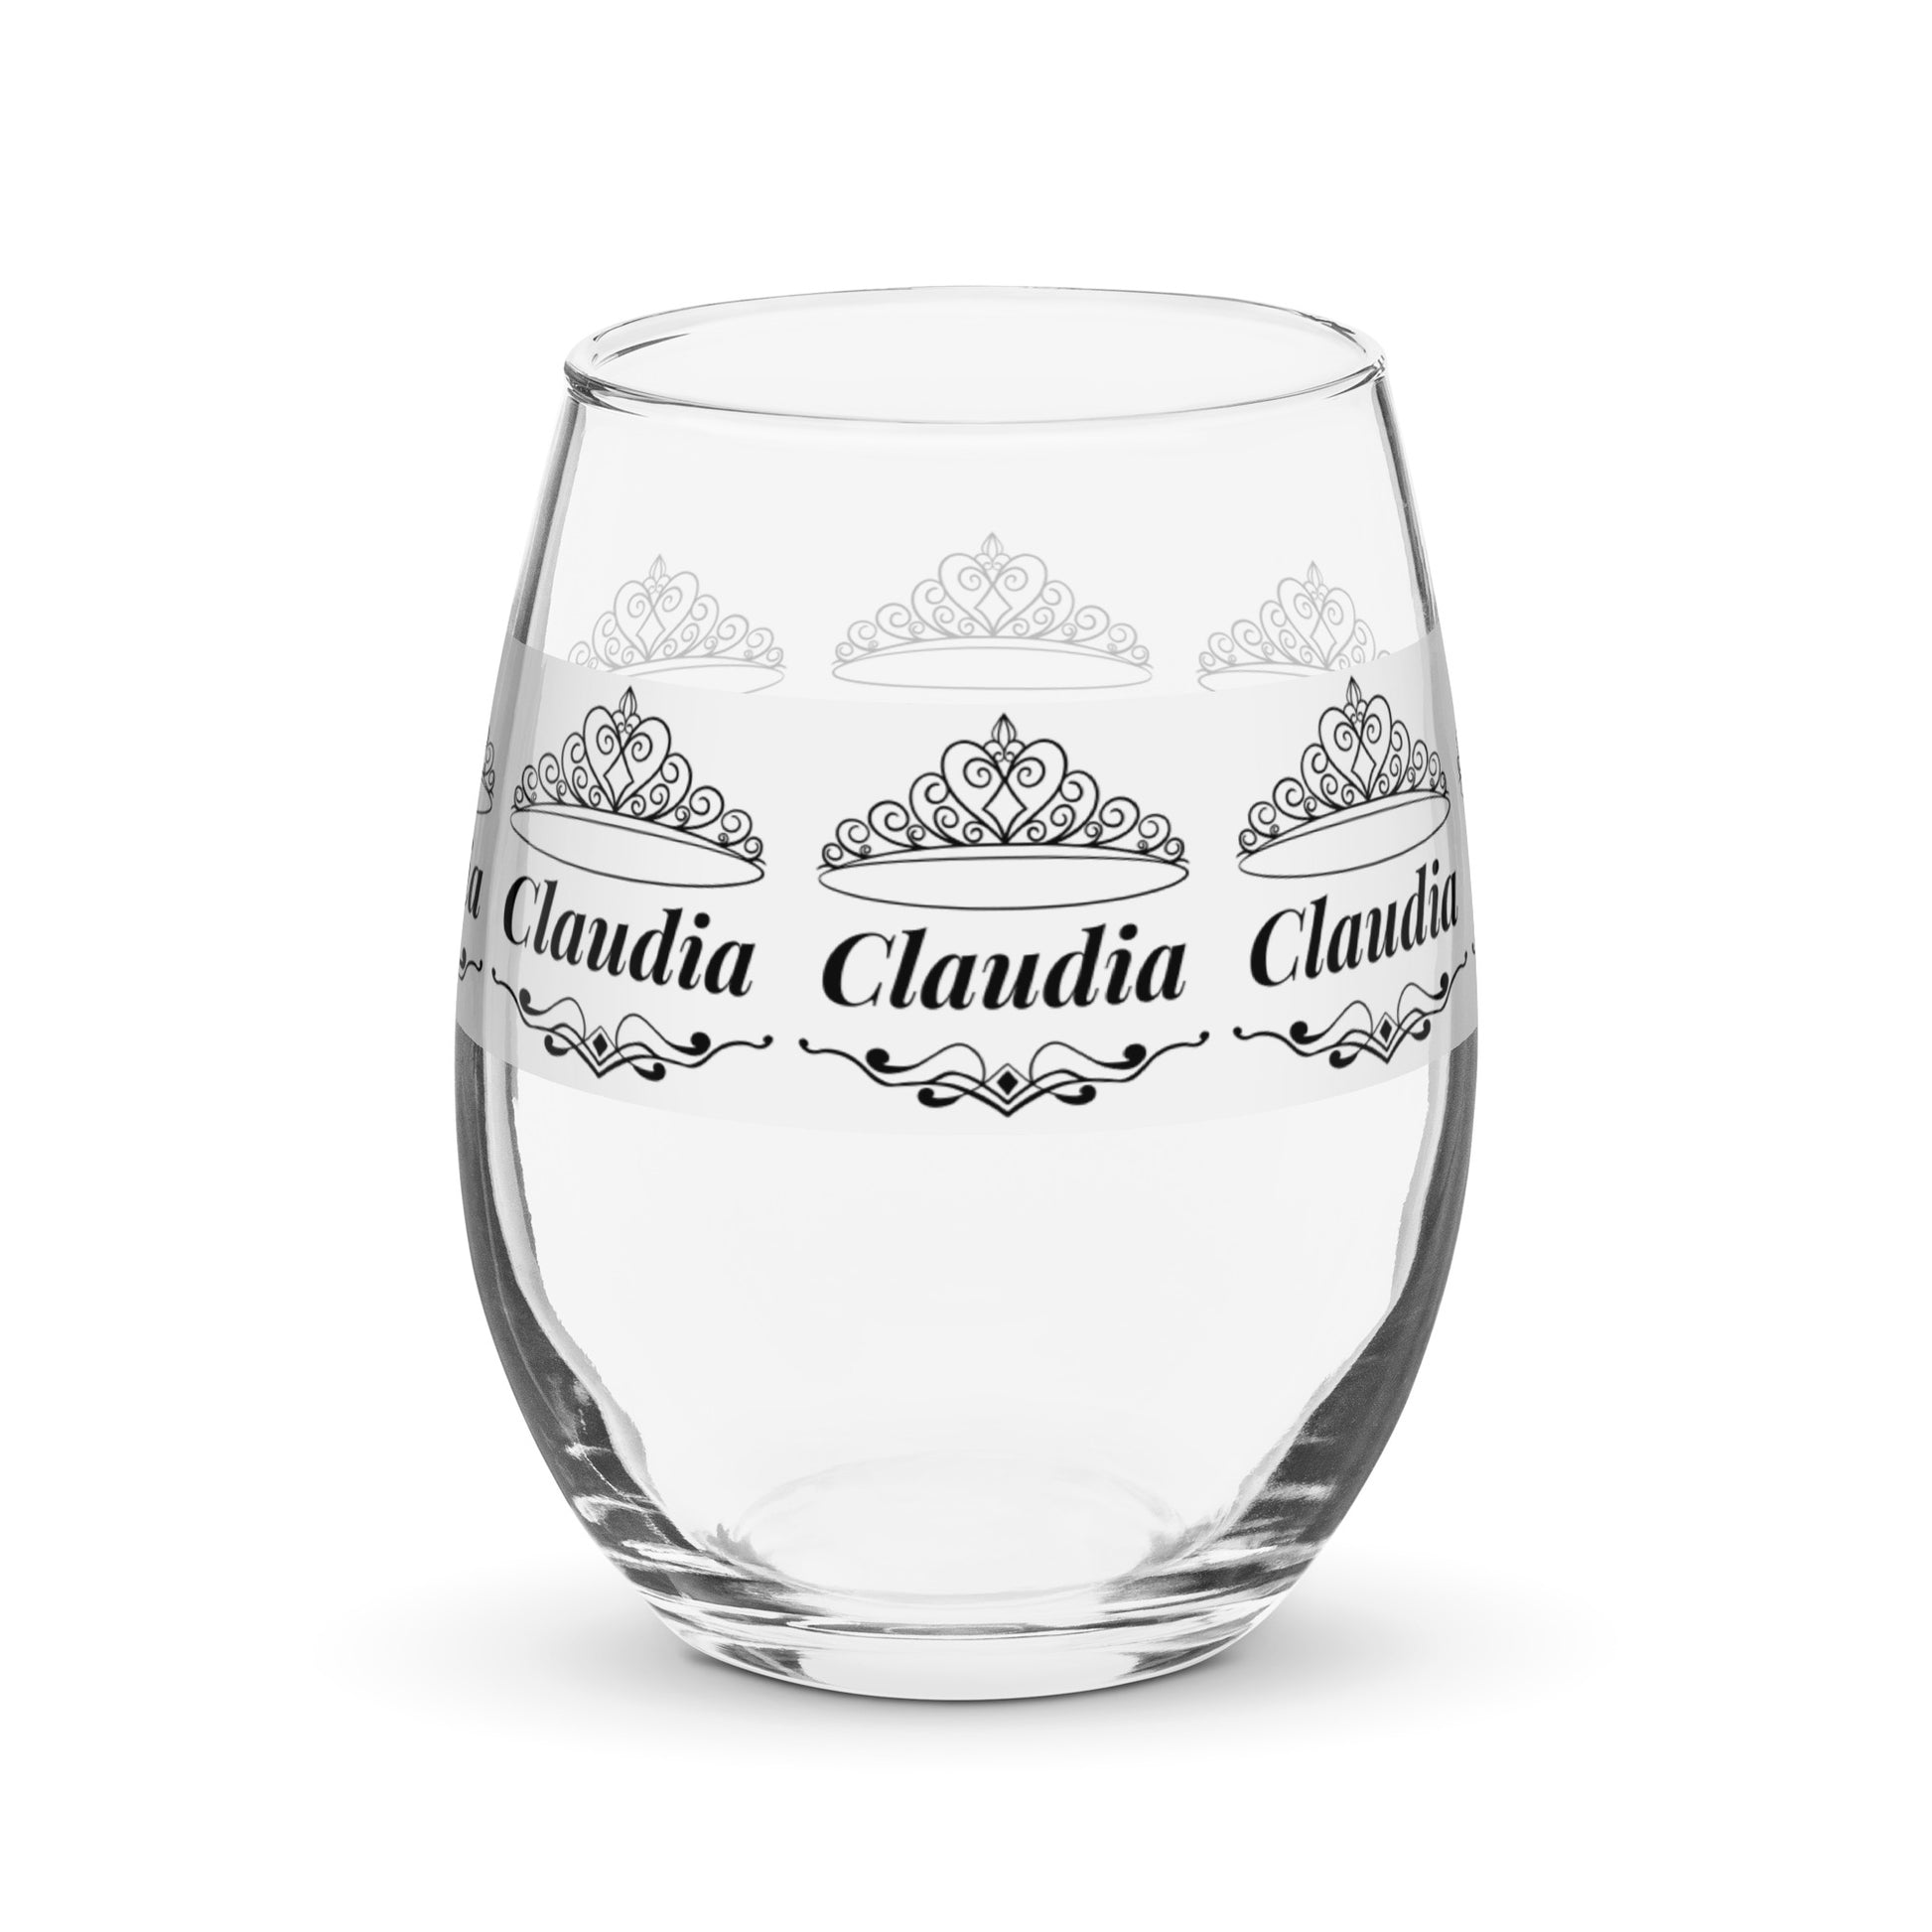 Claudia nombre copa de vino copa de vino personalizada copa de vino